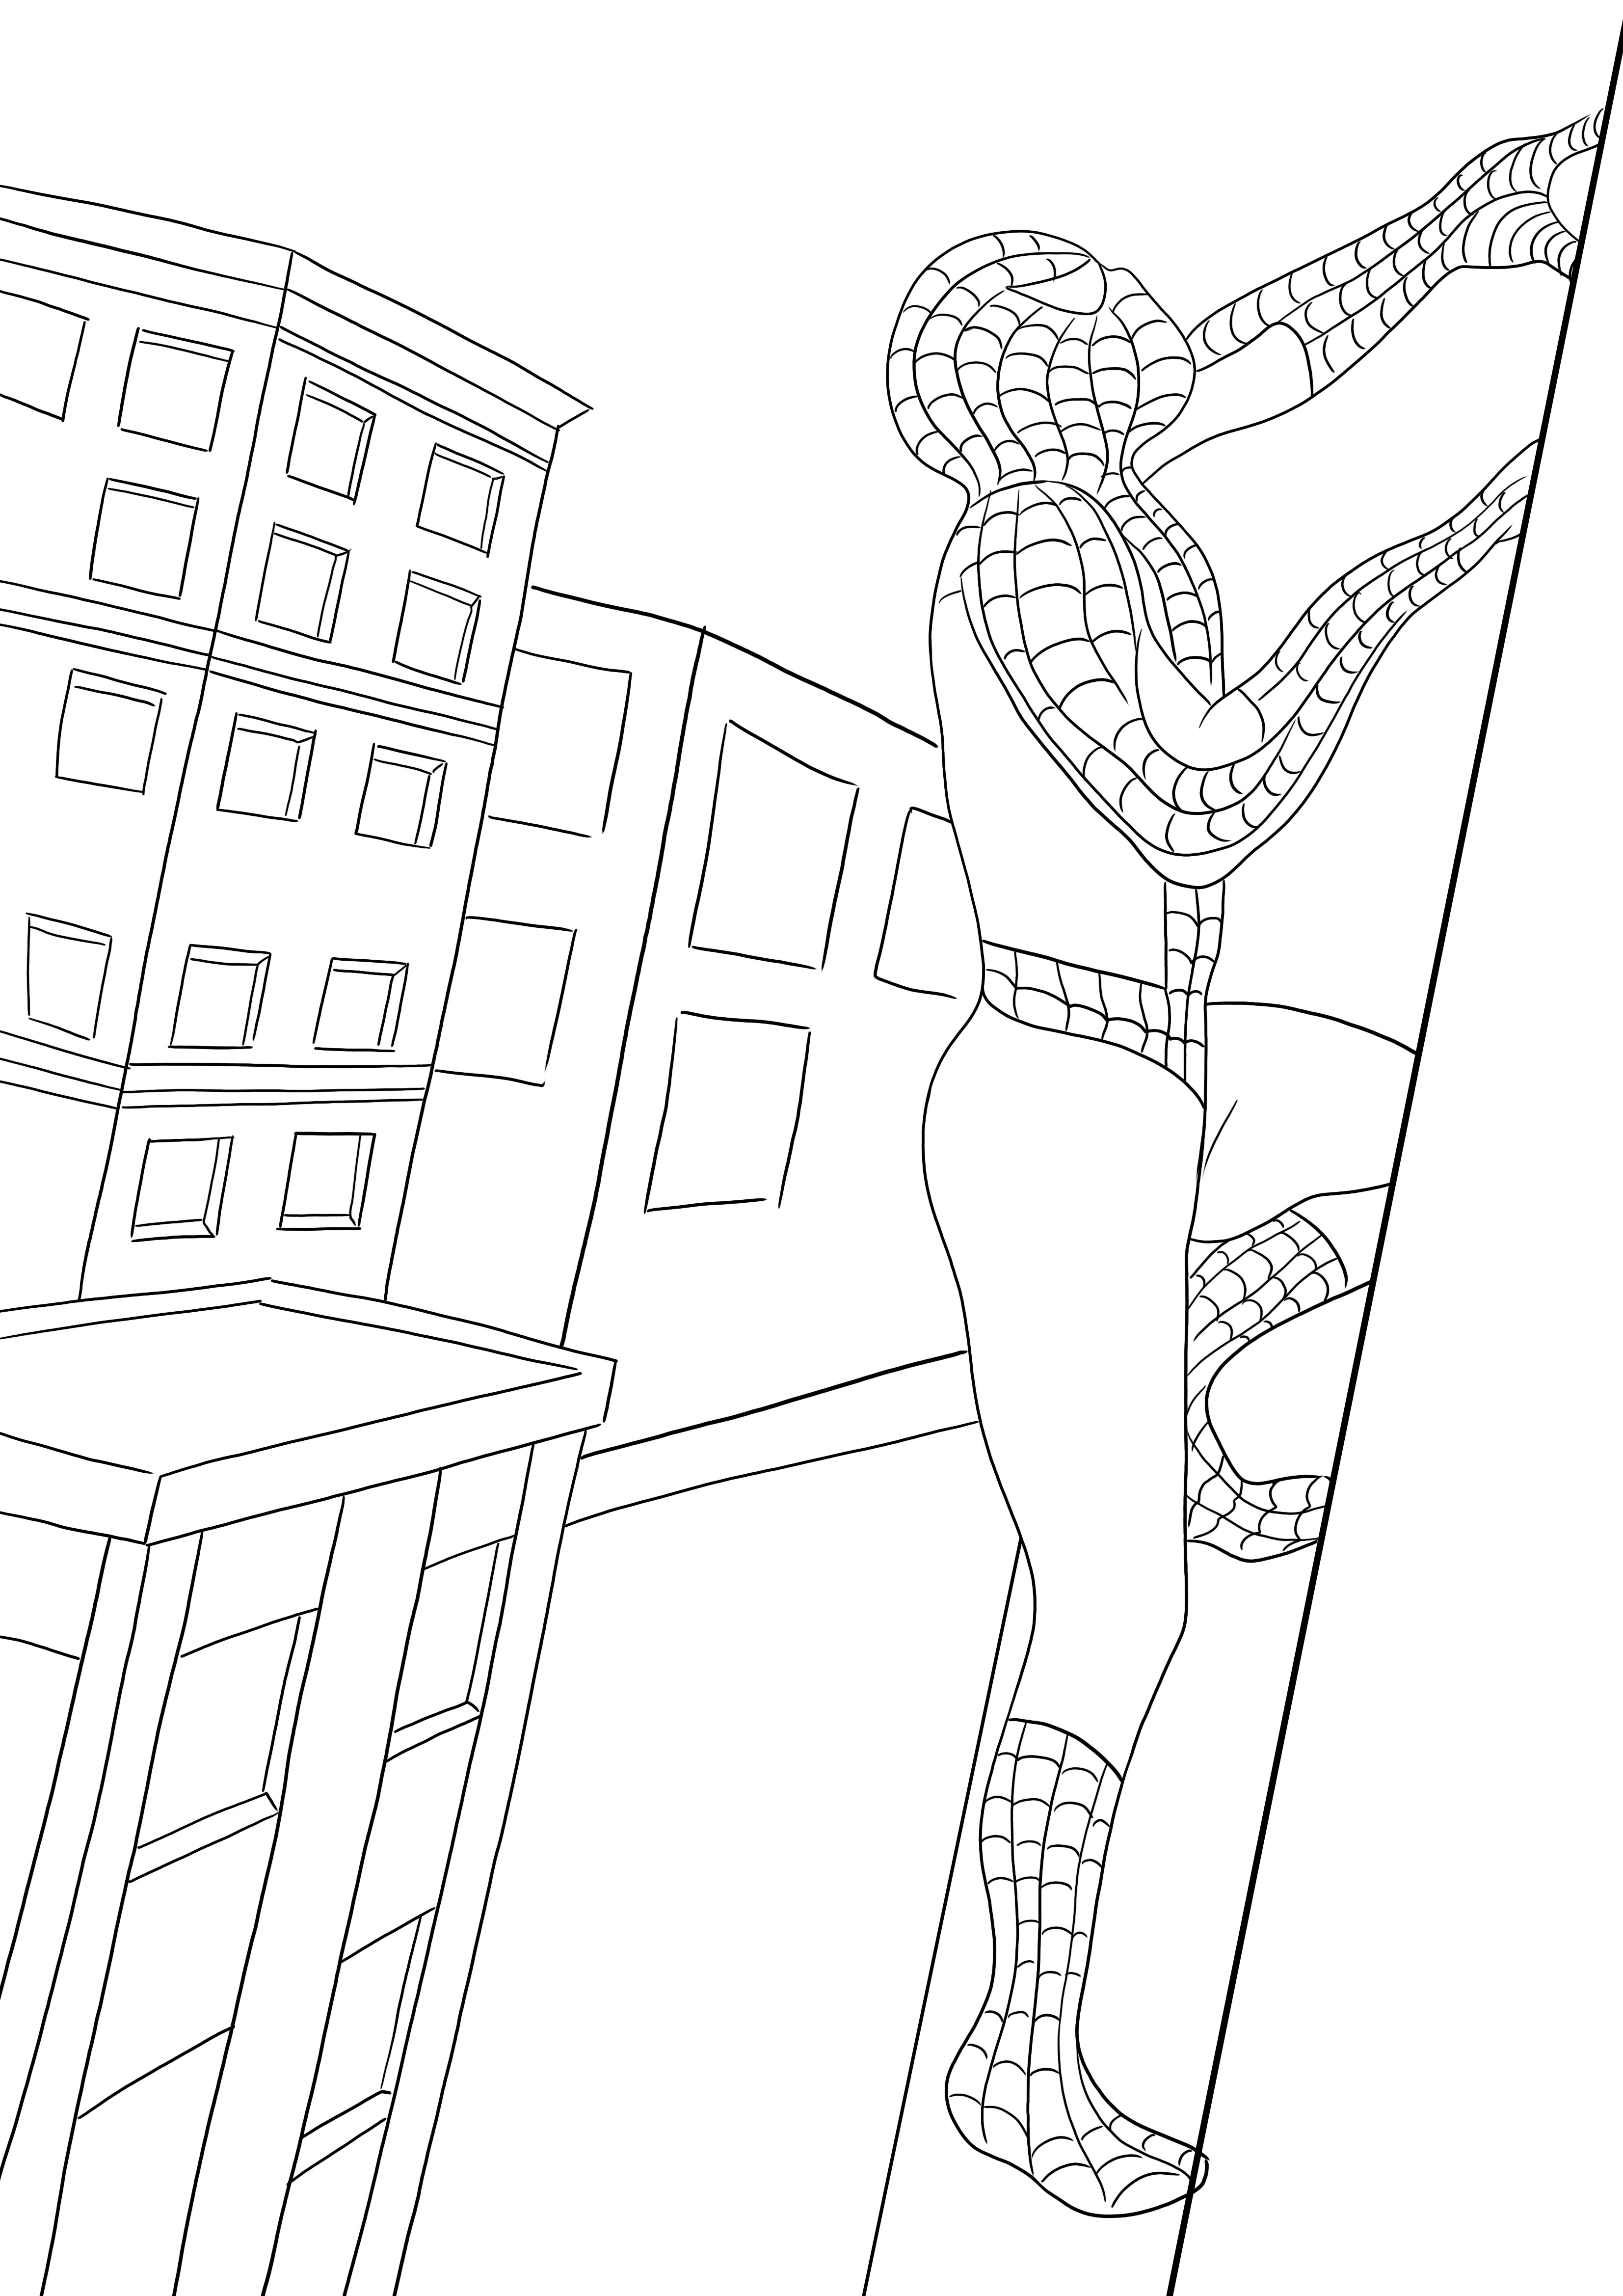 Bezpłatny wydruk przedstawiający Spidermana wspinającego się po budynku — dzieci mogą go łatwo pokolorować